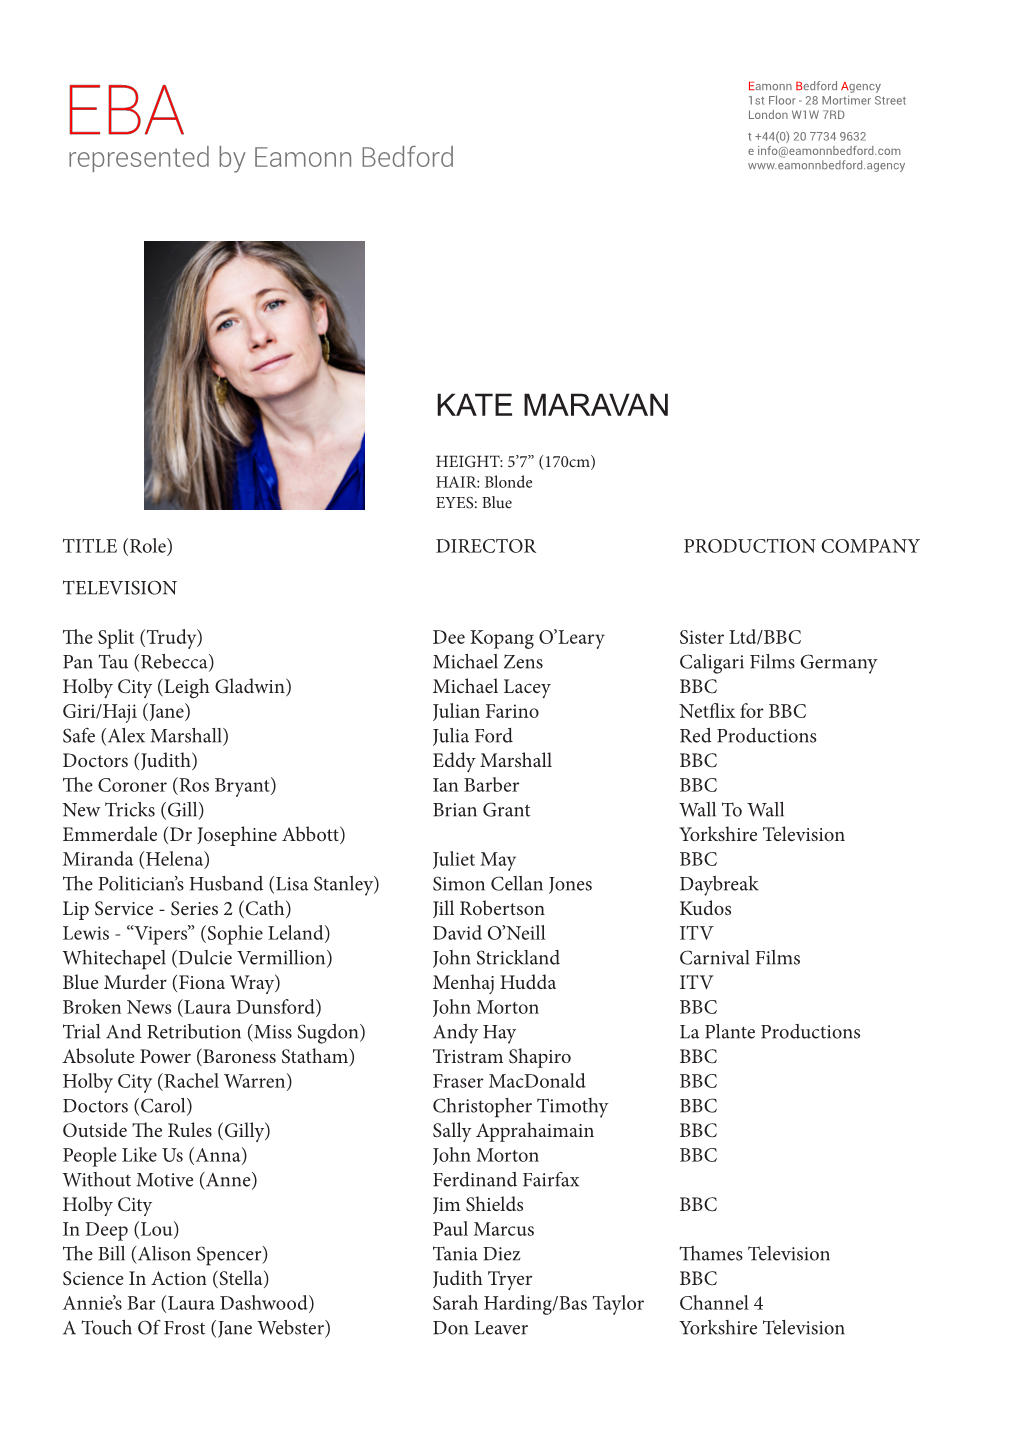 Kate Maravan